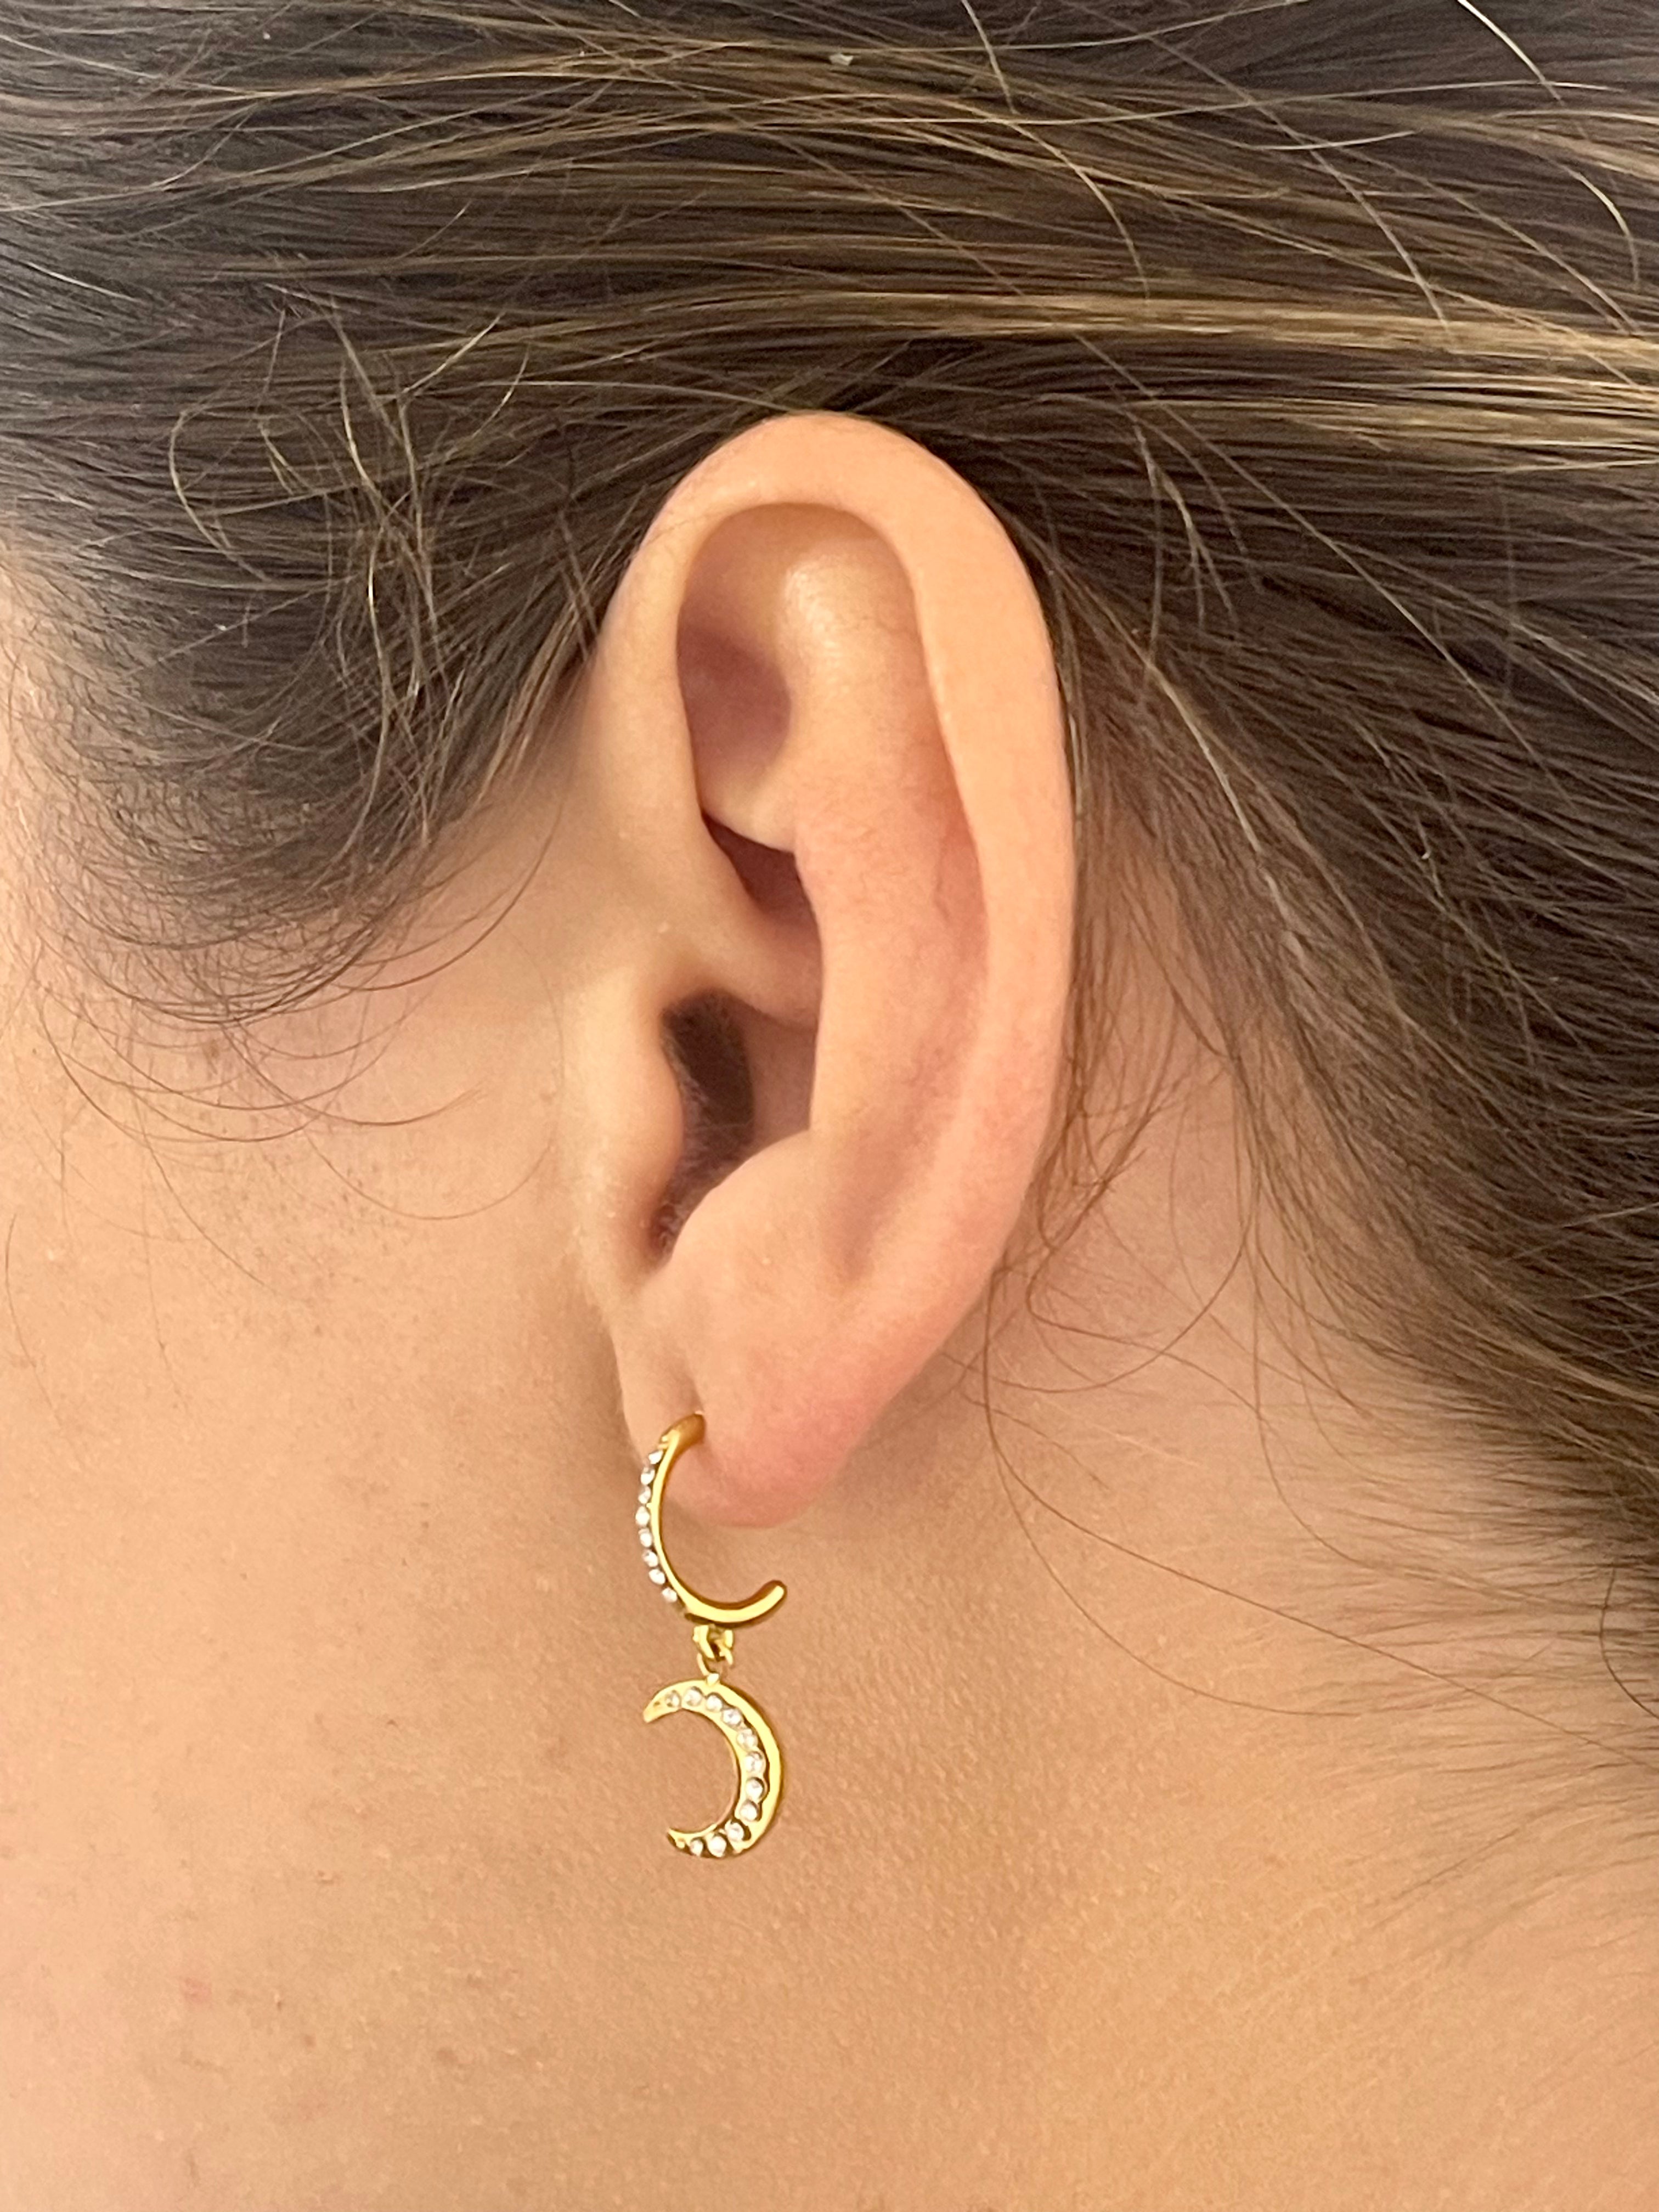 Eclipse Earrings